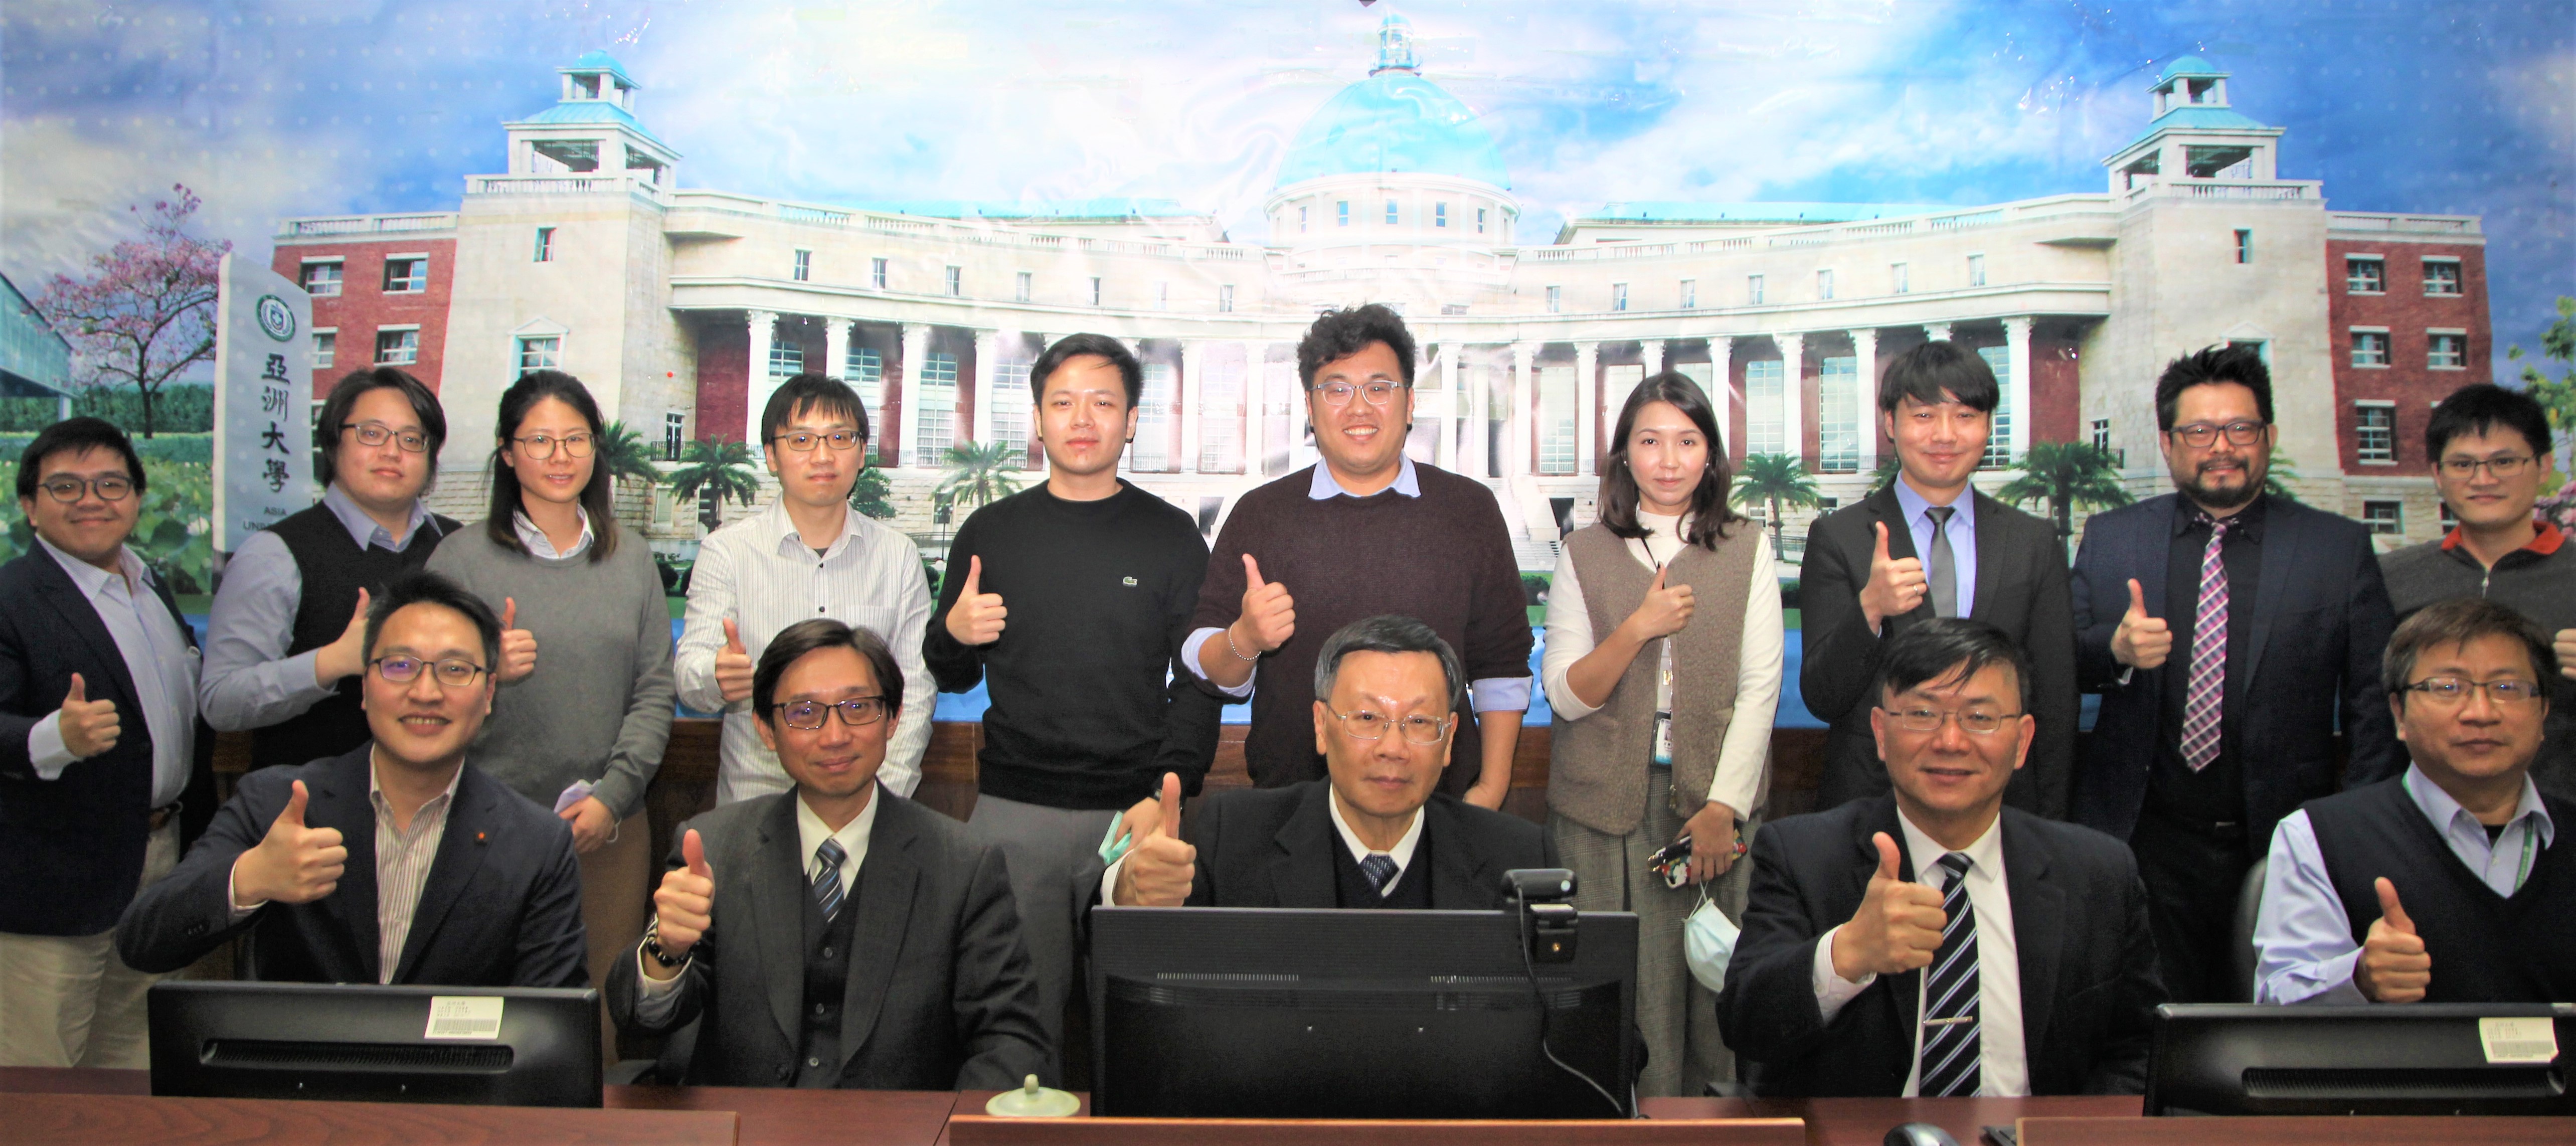 亞大校長蔡進發(前排左三)與參加台灣精準健康戰略產業發展方案的人員一起合影。